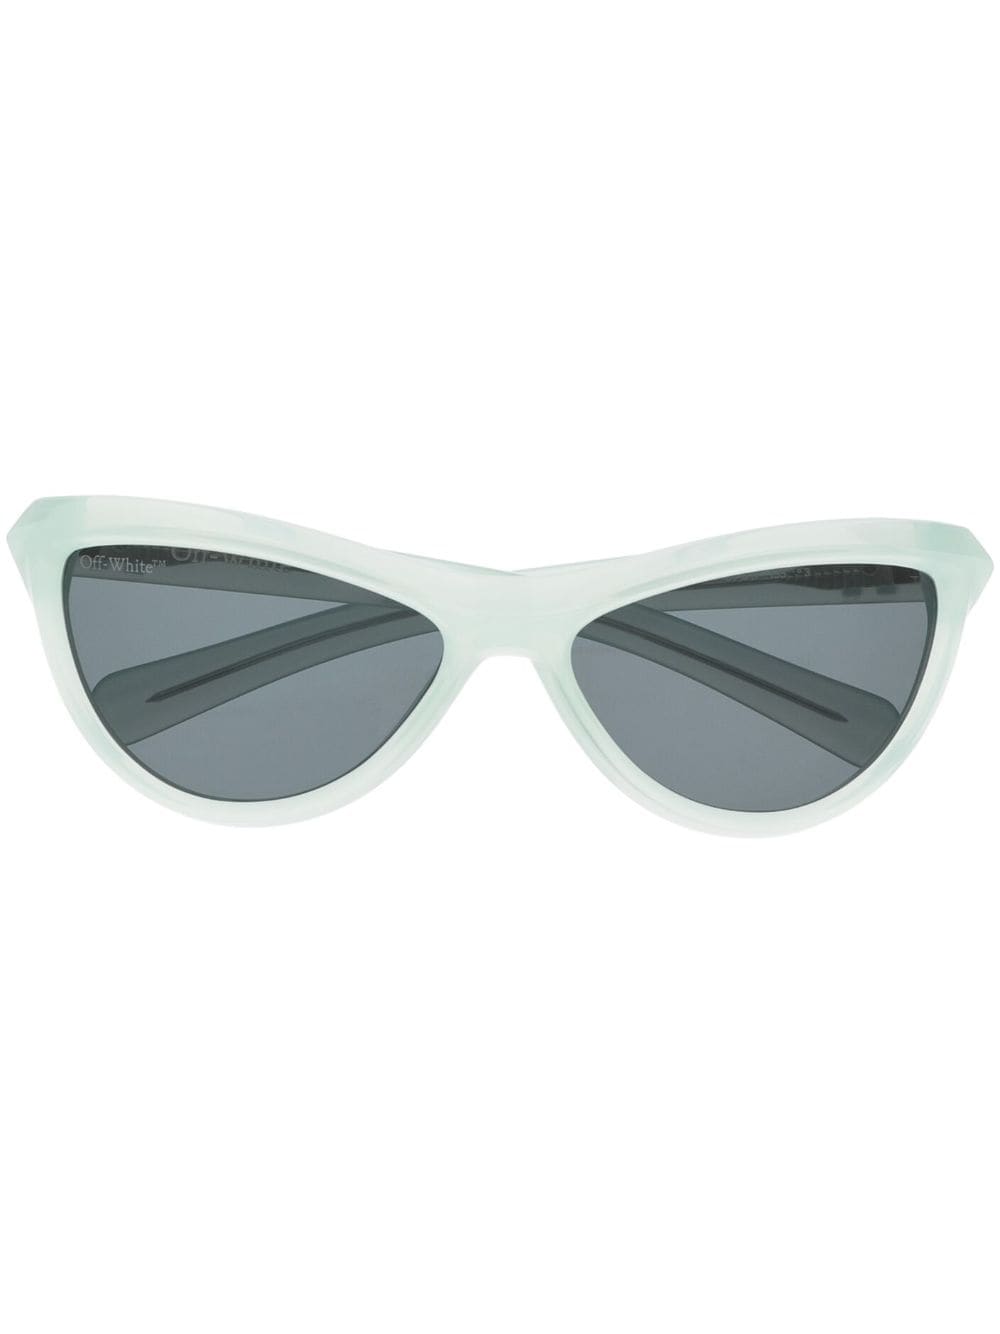 Off-White Atlanta cat-eye frame sunglasses - Green von Off-White